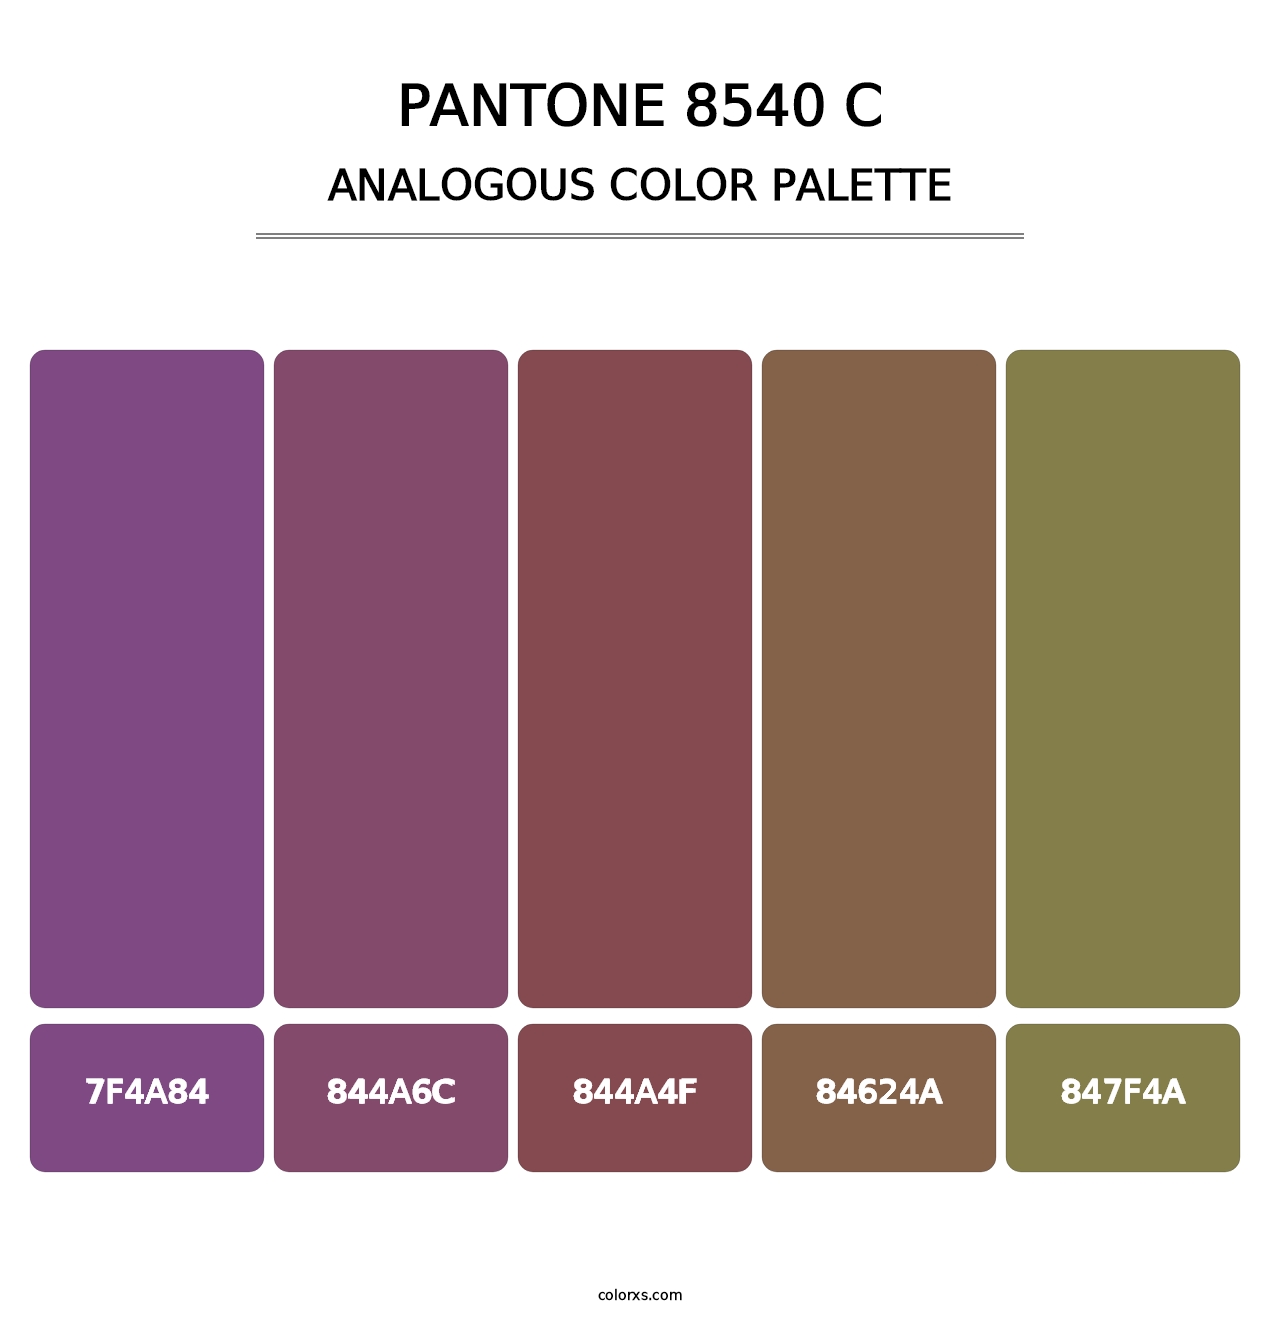 PANTONE 8540 C - Analogous Color Palette